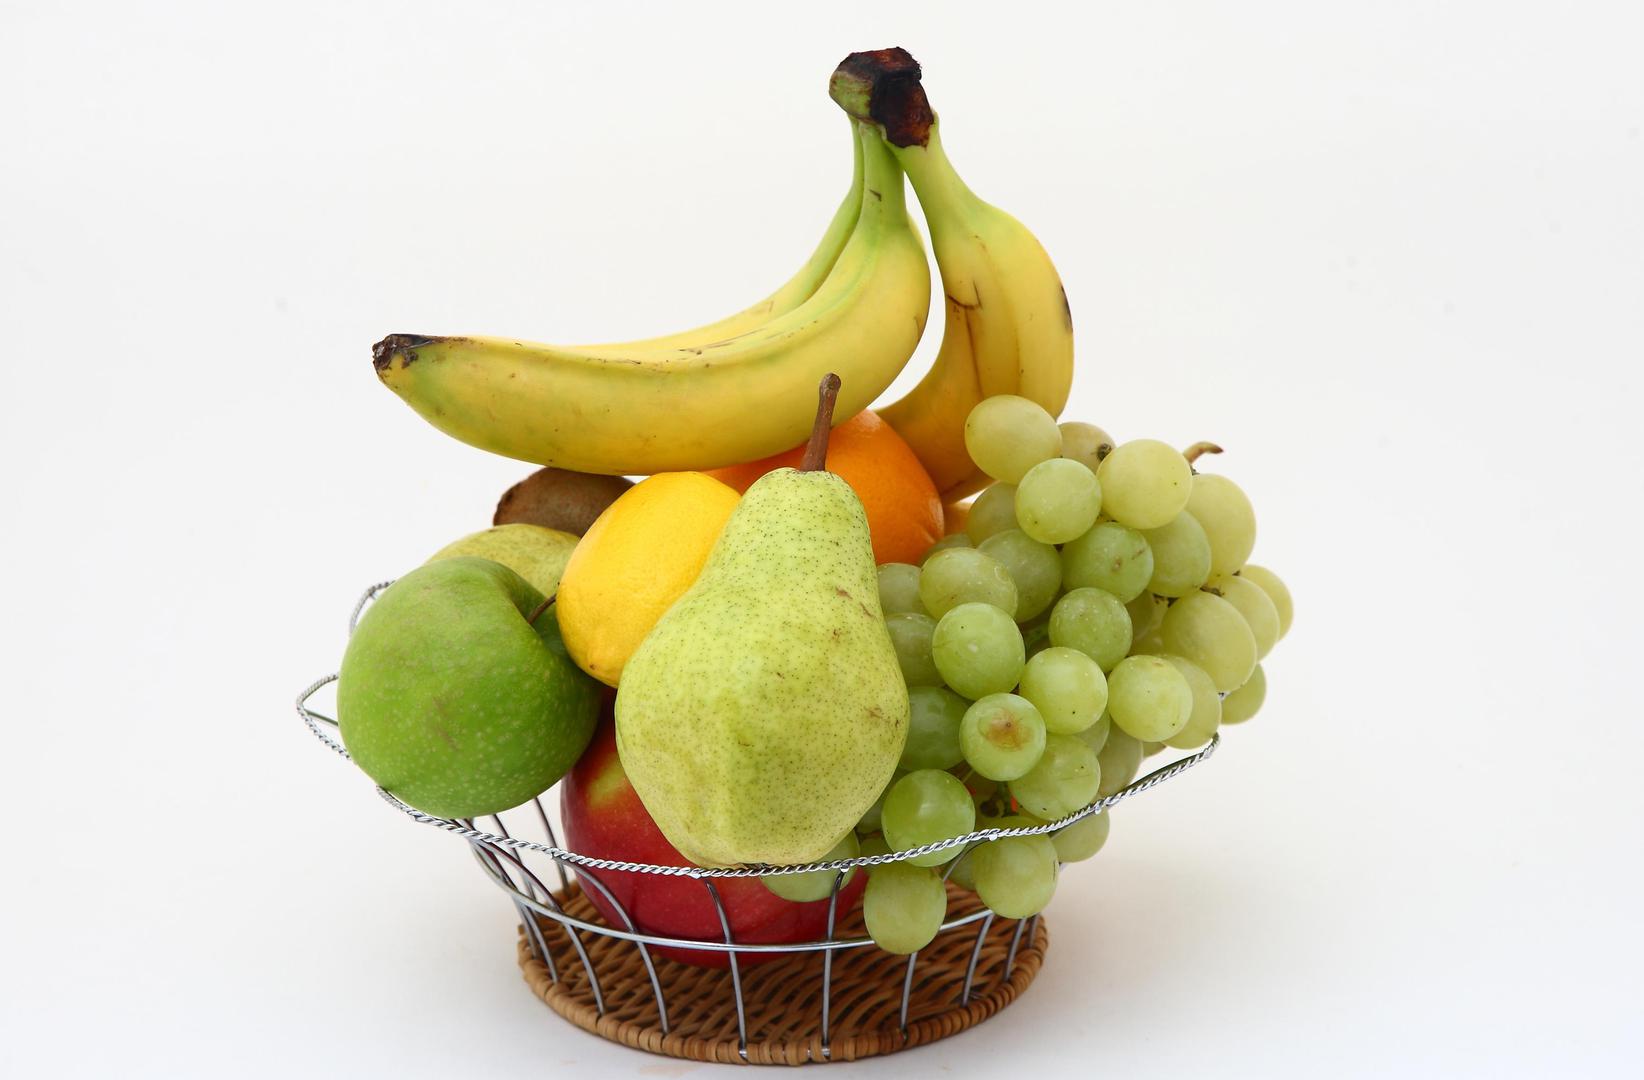 Dijabetičari bi trebali imati na umu da između obroka i konzumacije voća treba proći jedan do dva sata